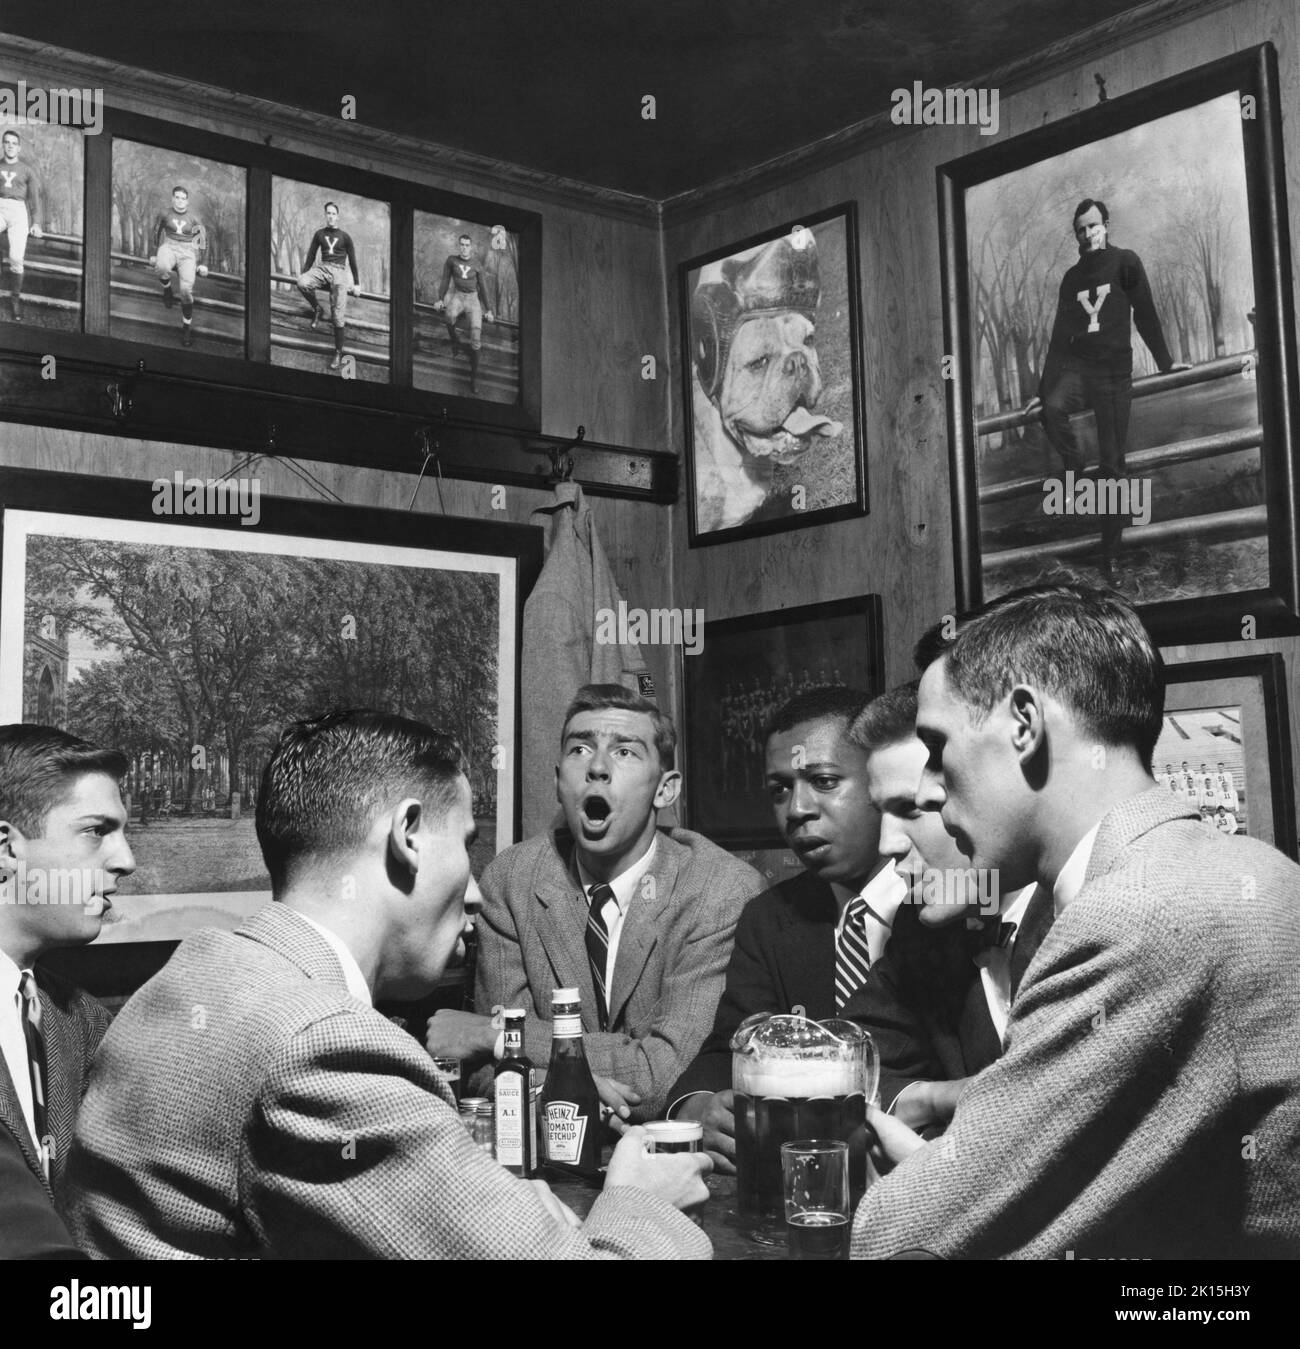 Imagen histórica de amigos bebiendo en Mory's Temple Bar en New Haven, Connecticut; mediados del siglo 20th. Foto de stock